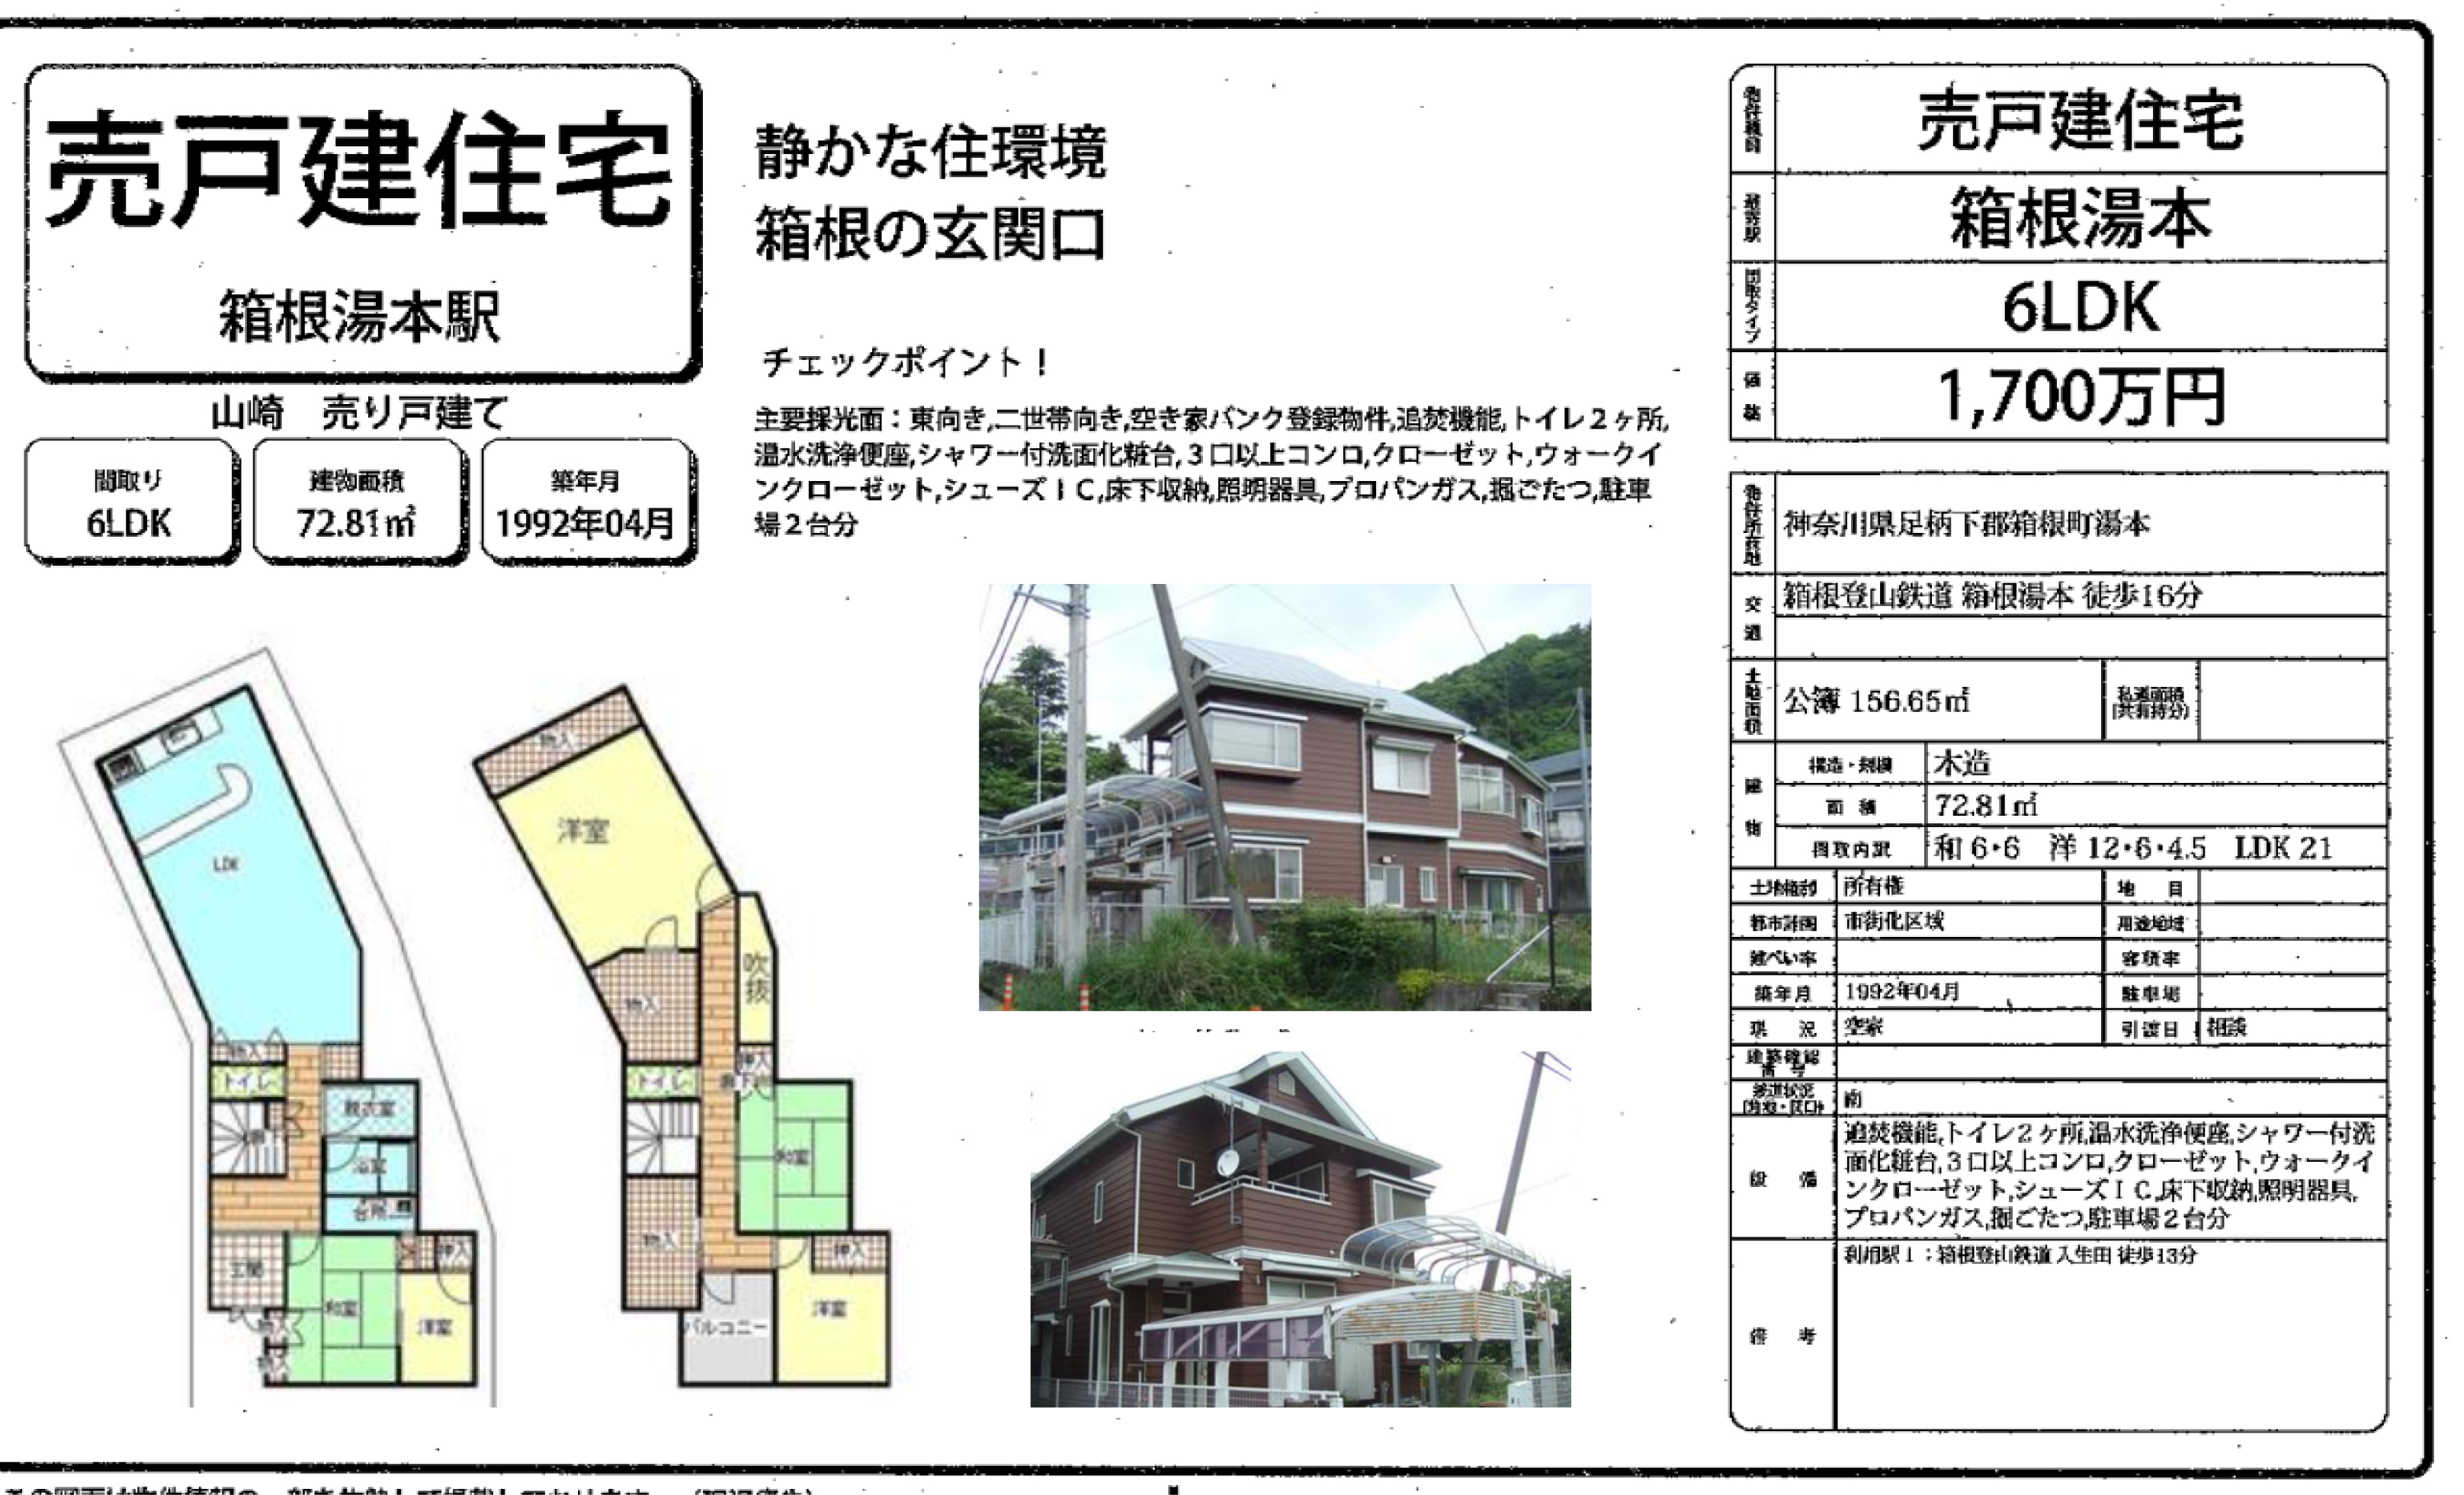 簡易宿泊所向け物件のご紹介です。 箱根湯本 ・  鎌倉・東陽町です。 東陽町は空き家渡しです。是非ご検討ください。